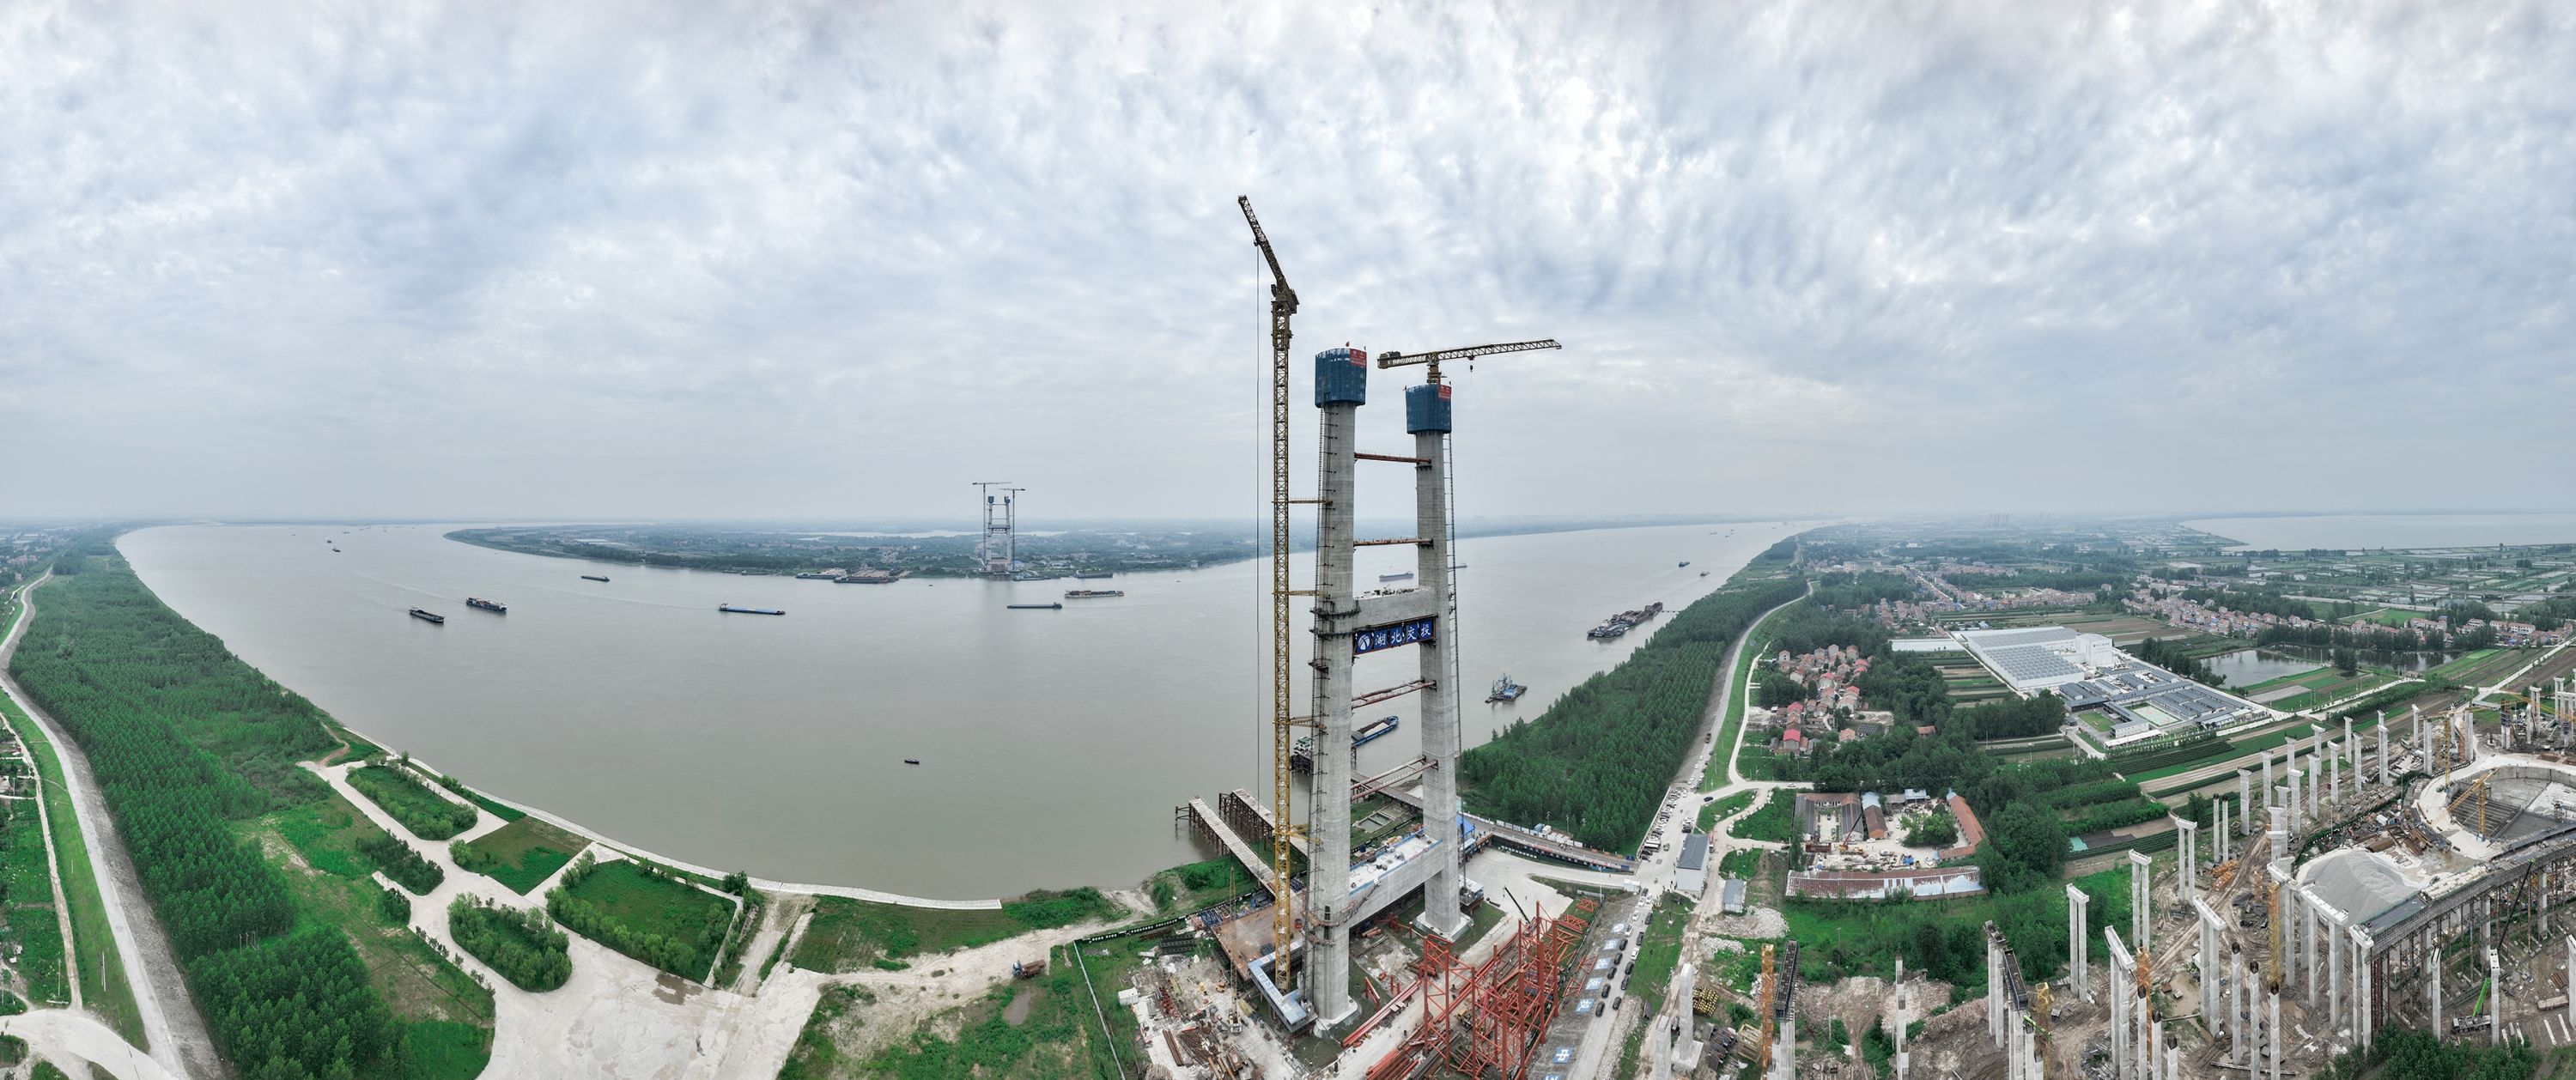 双柳长江大桥双主塔实现封顶 新洲到鄂州行车距离将缩短到5分钟